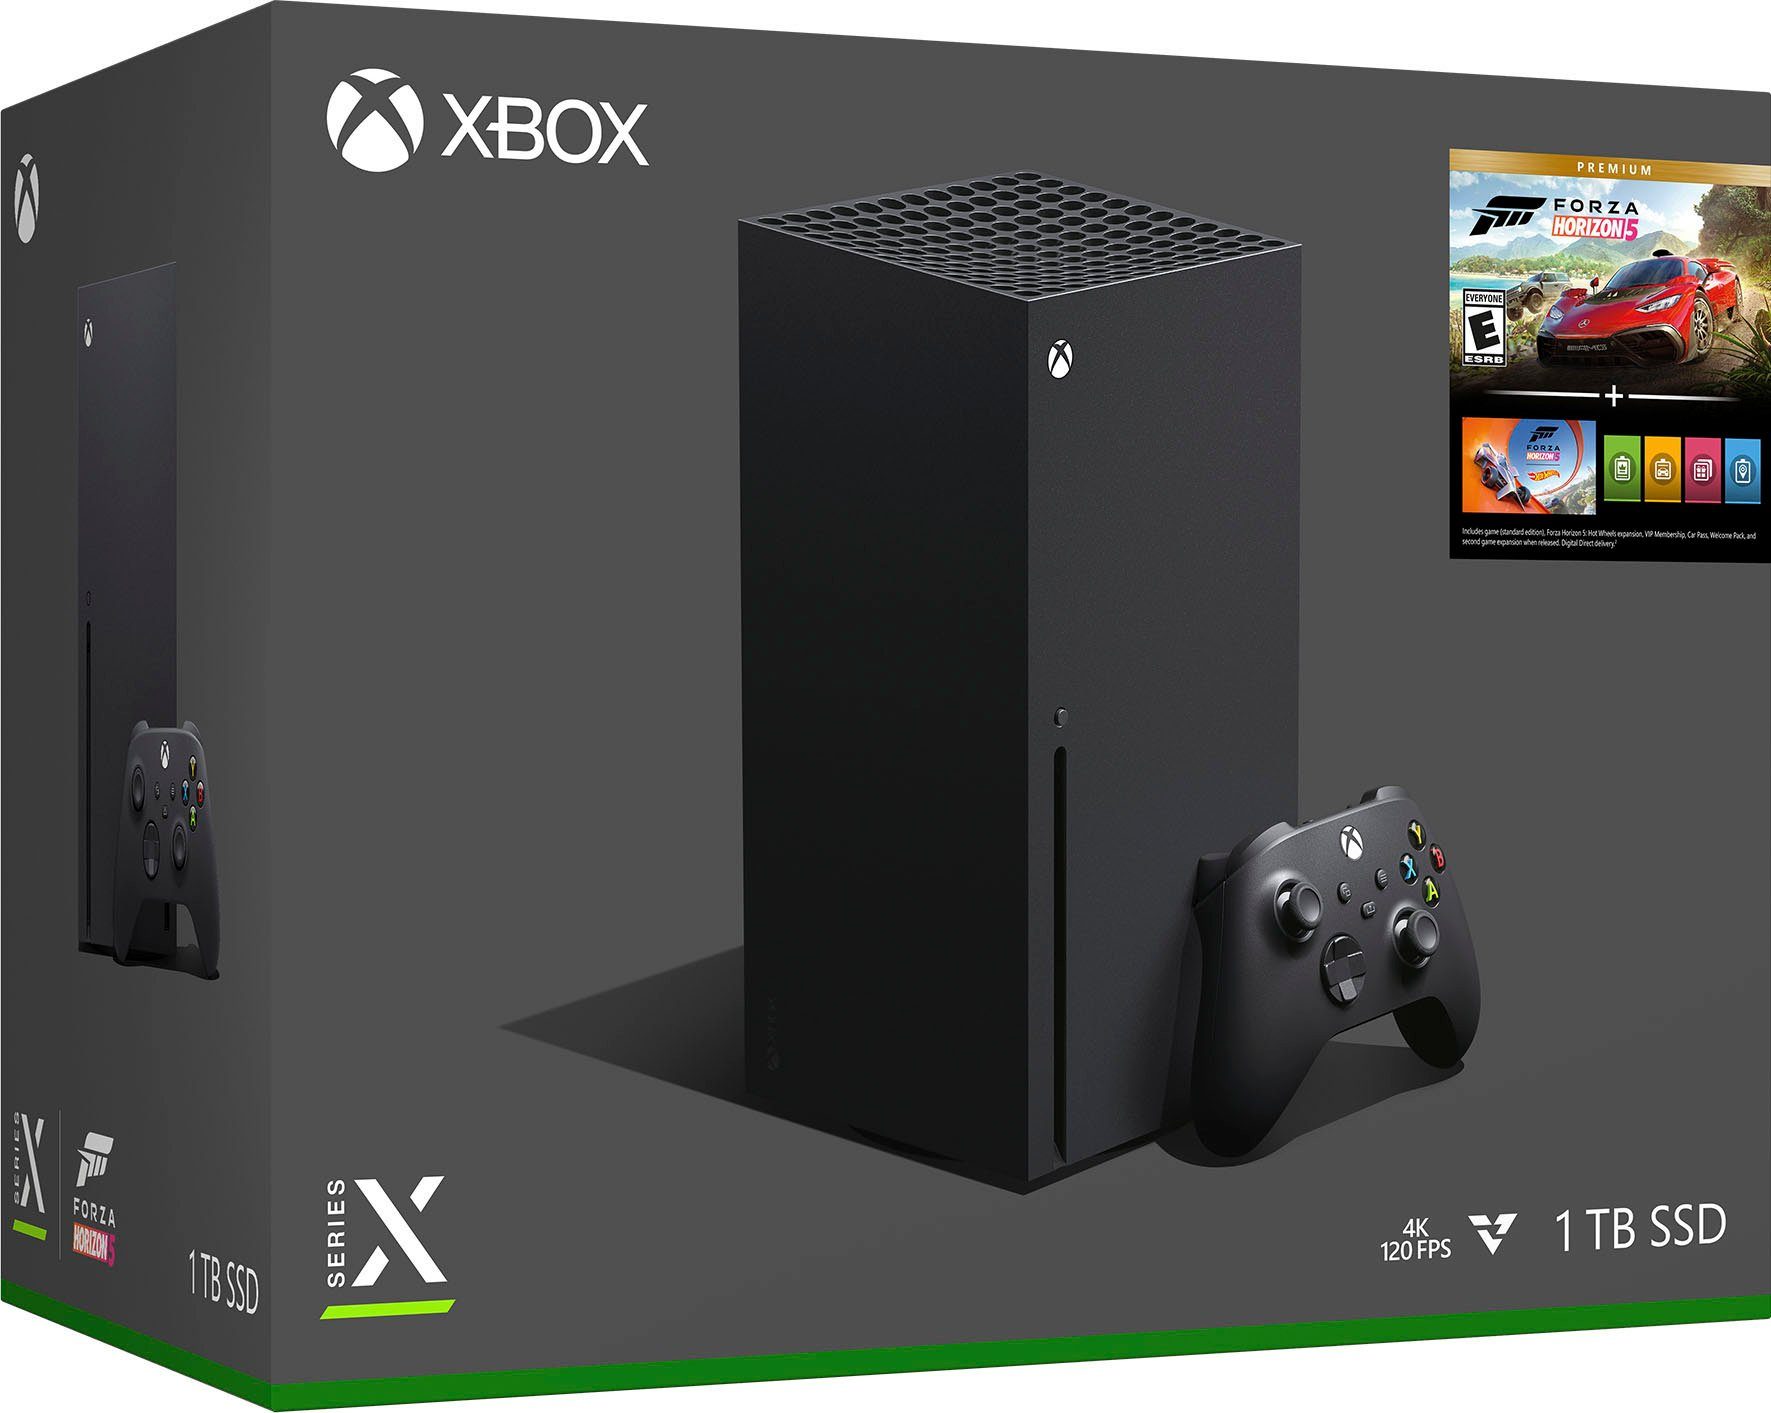 Edition Series Xbox 5 Forza Premium Horizon Bundle – X